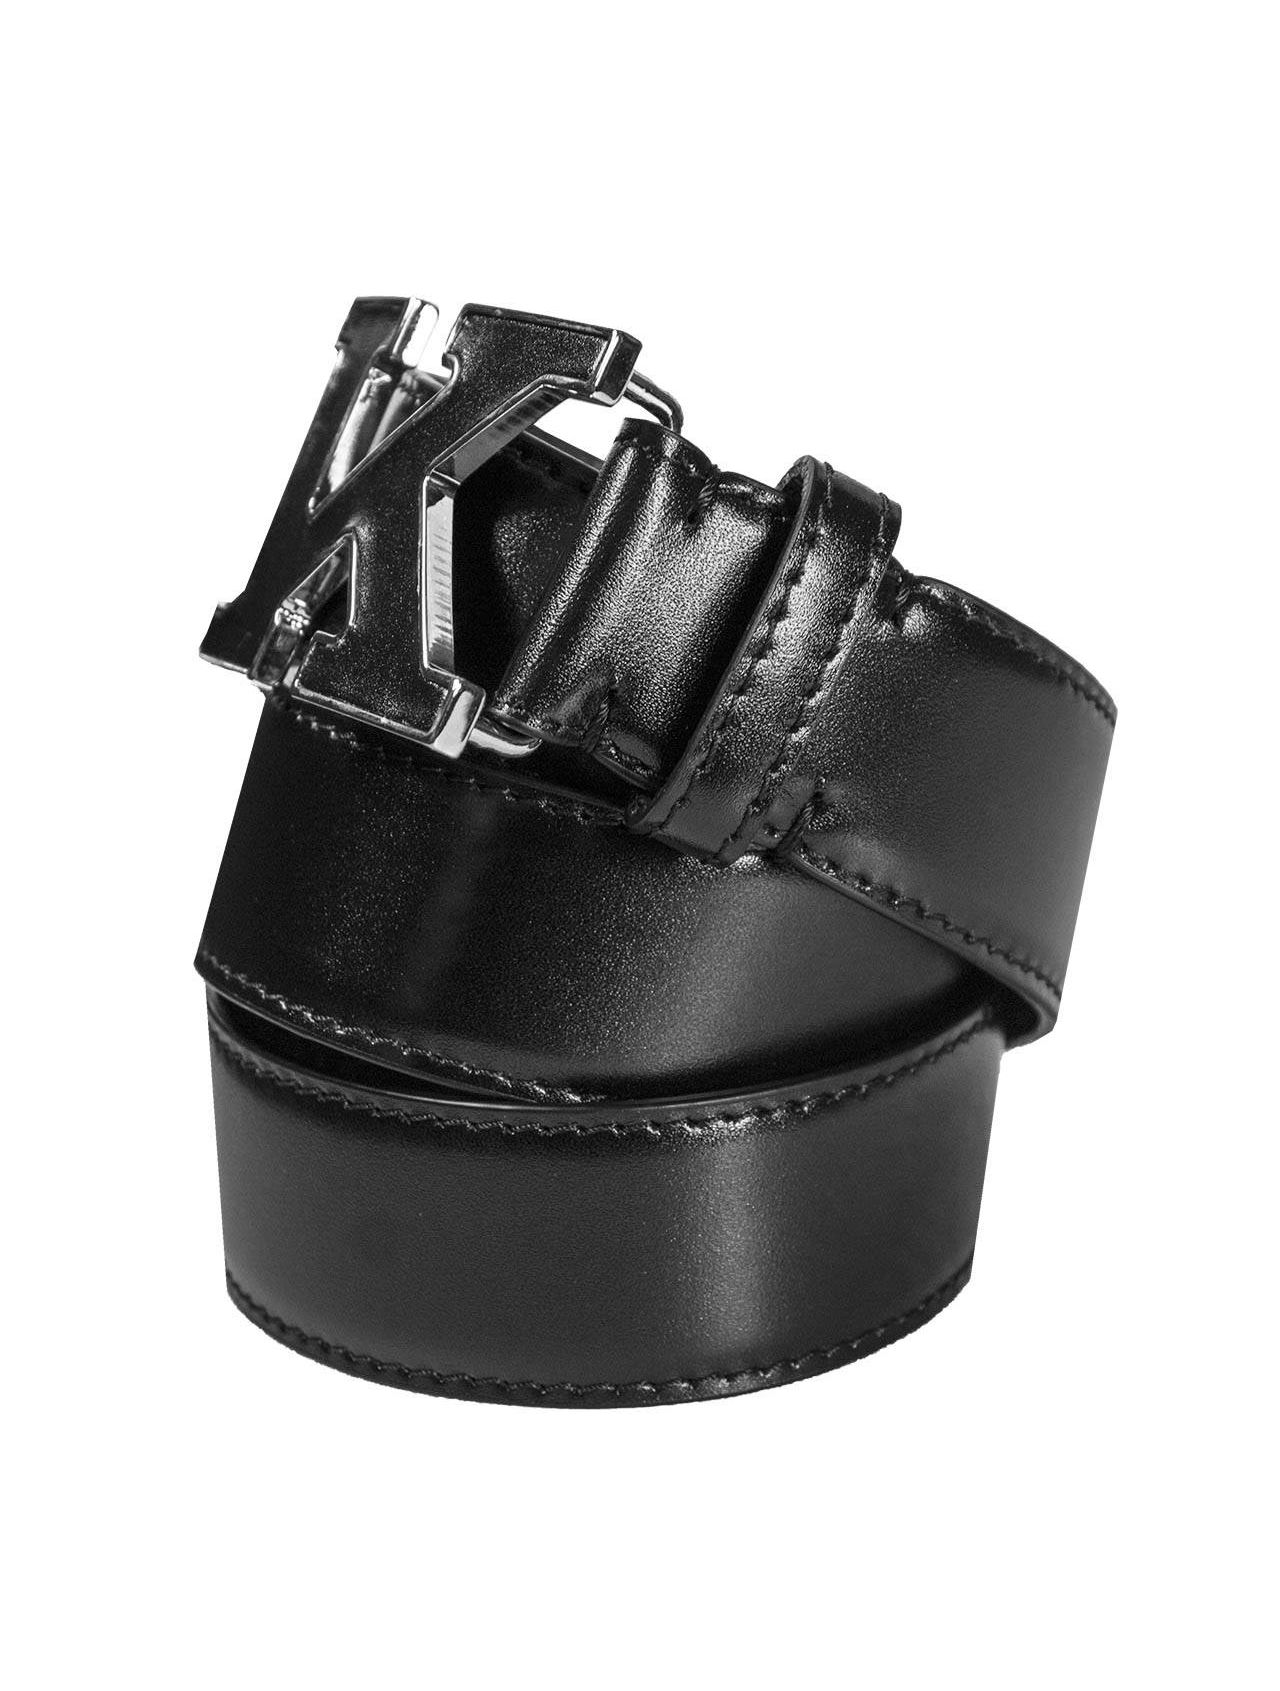 Shape leather belt Louis Vuitton Multicolour size 95 cm in Leather